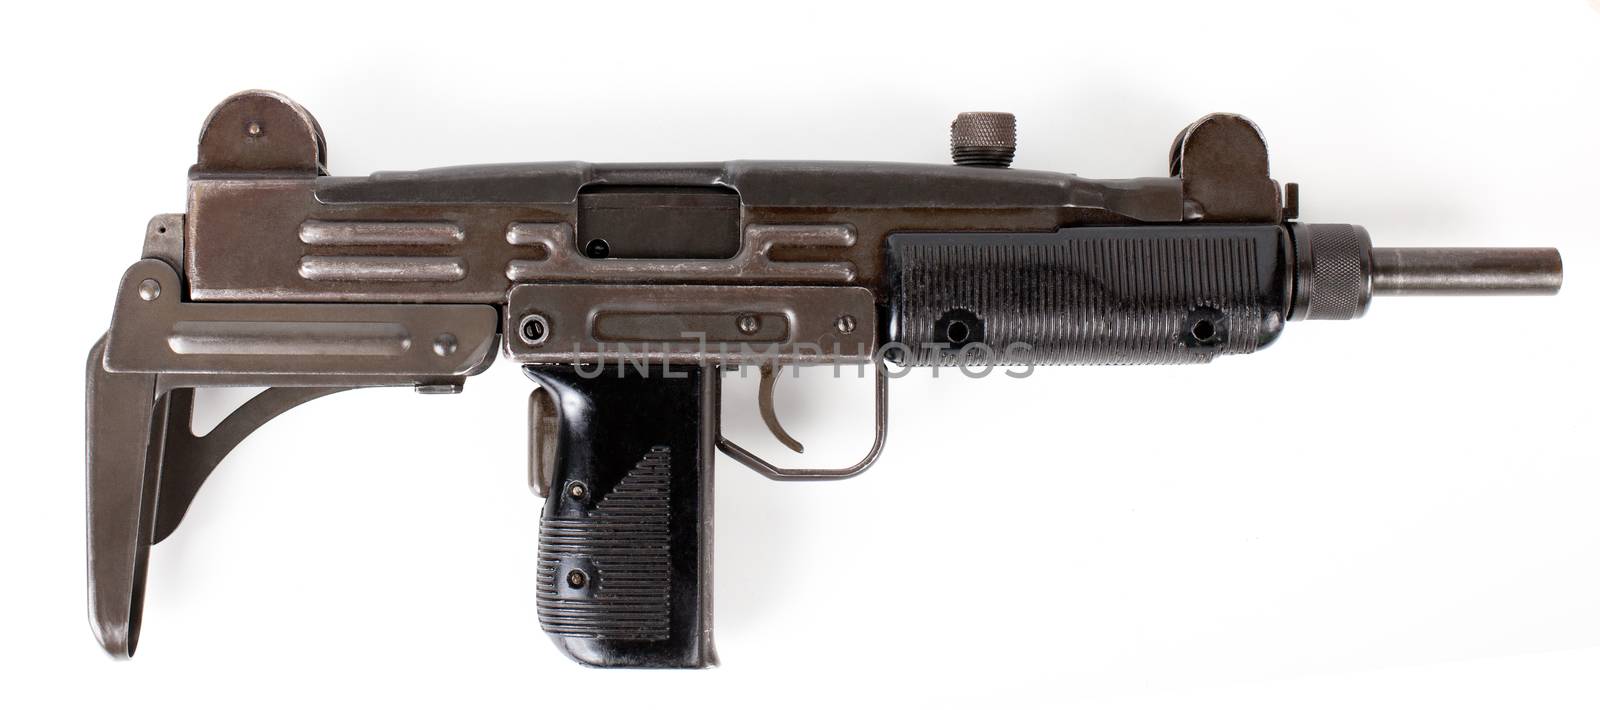 Uzi submachine gun isolated on white background